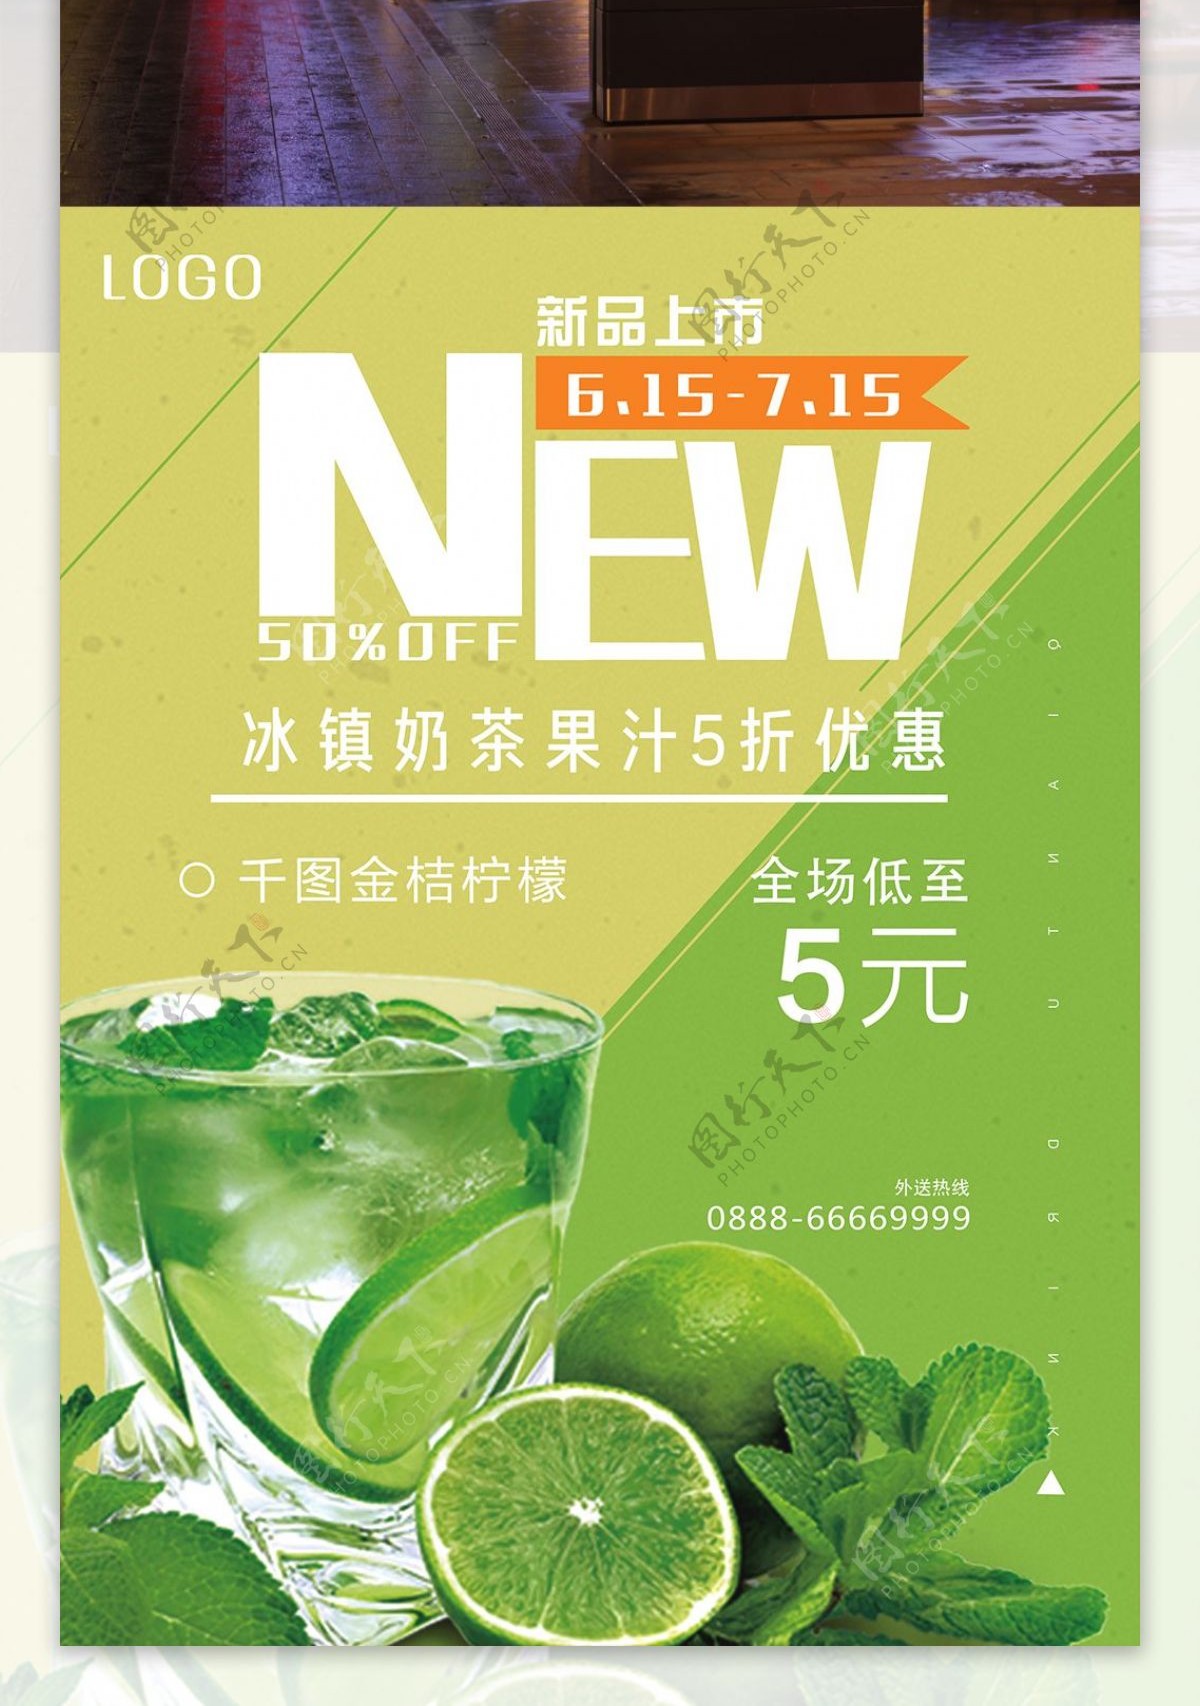 绿色奶茶饮品饮料促销活动海报模板